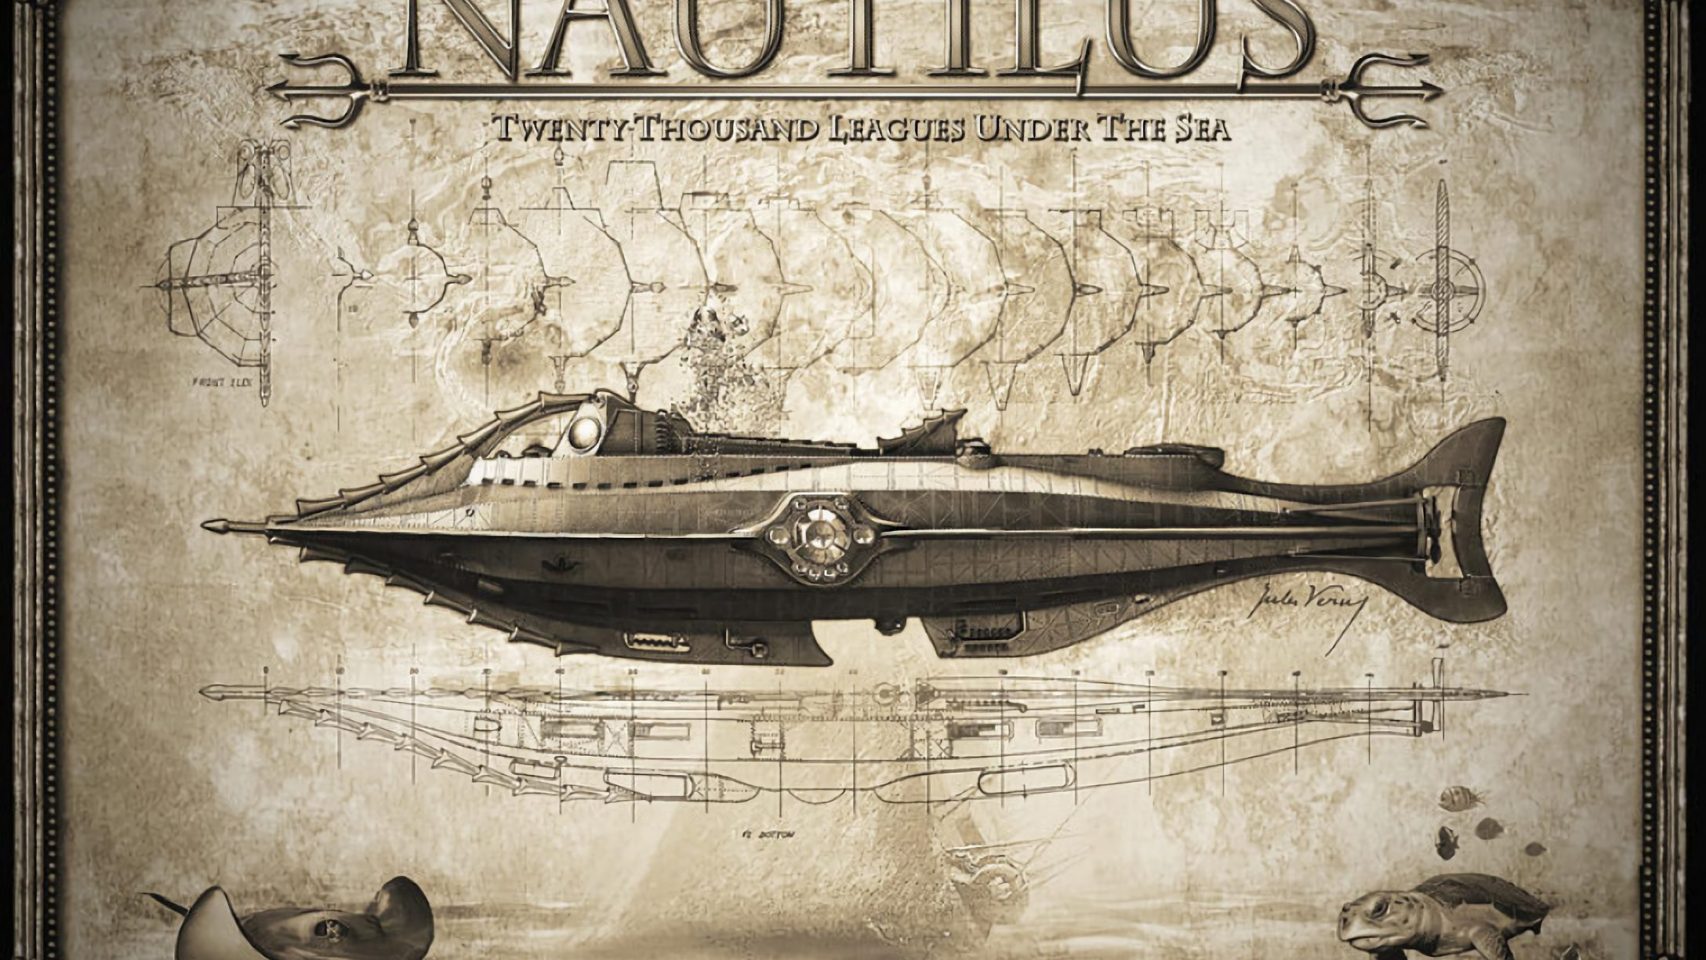 El Nautilus. https://fineartamerica.com